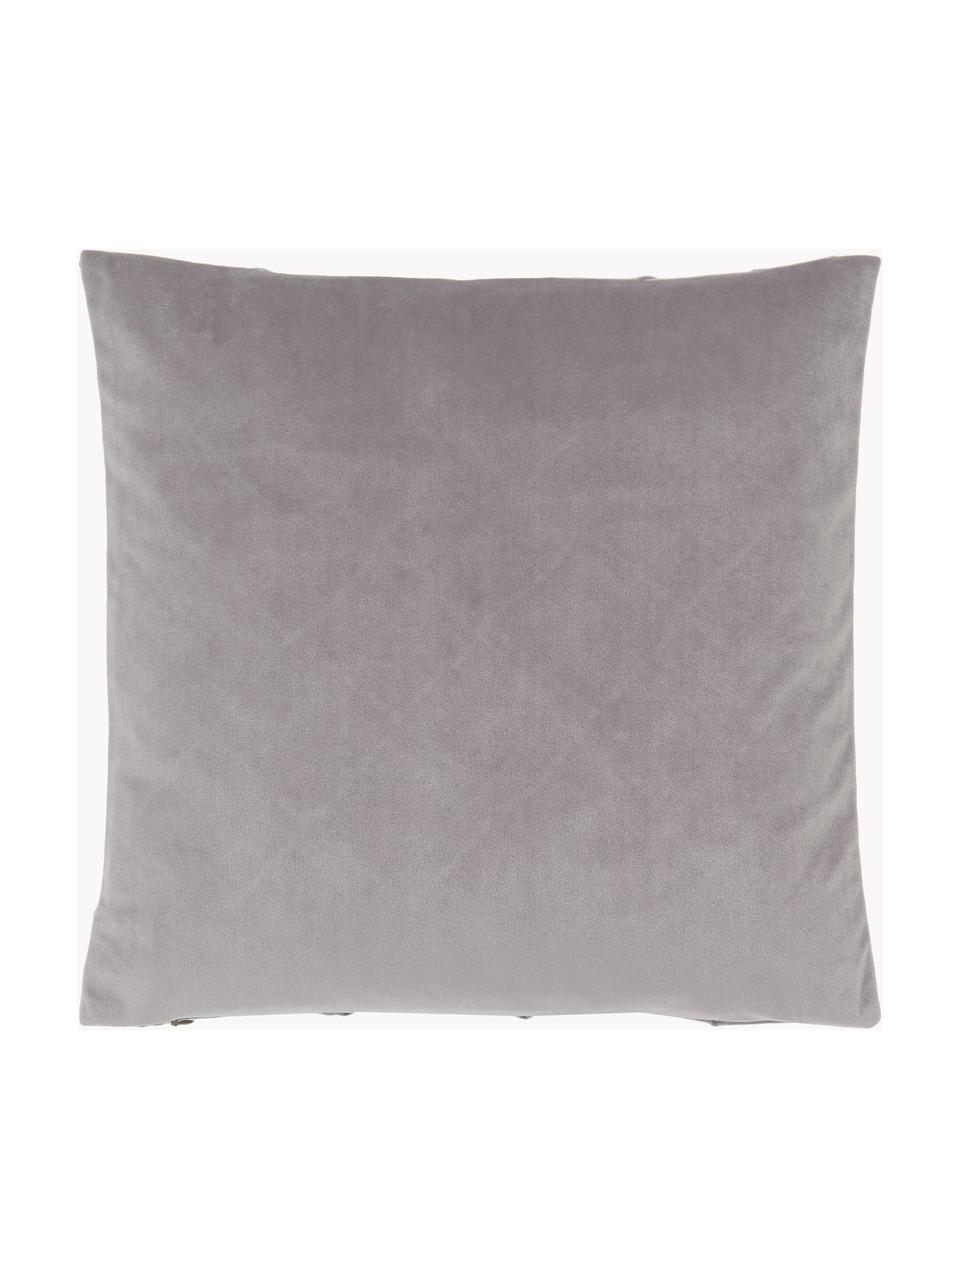 Fluwelen kussenhoes Luka met gestructureerd ruitpatroon, Fluweel (100% polyester), Grijs, B 40 x L 40 cm